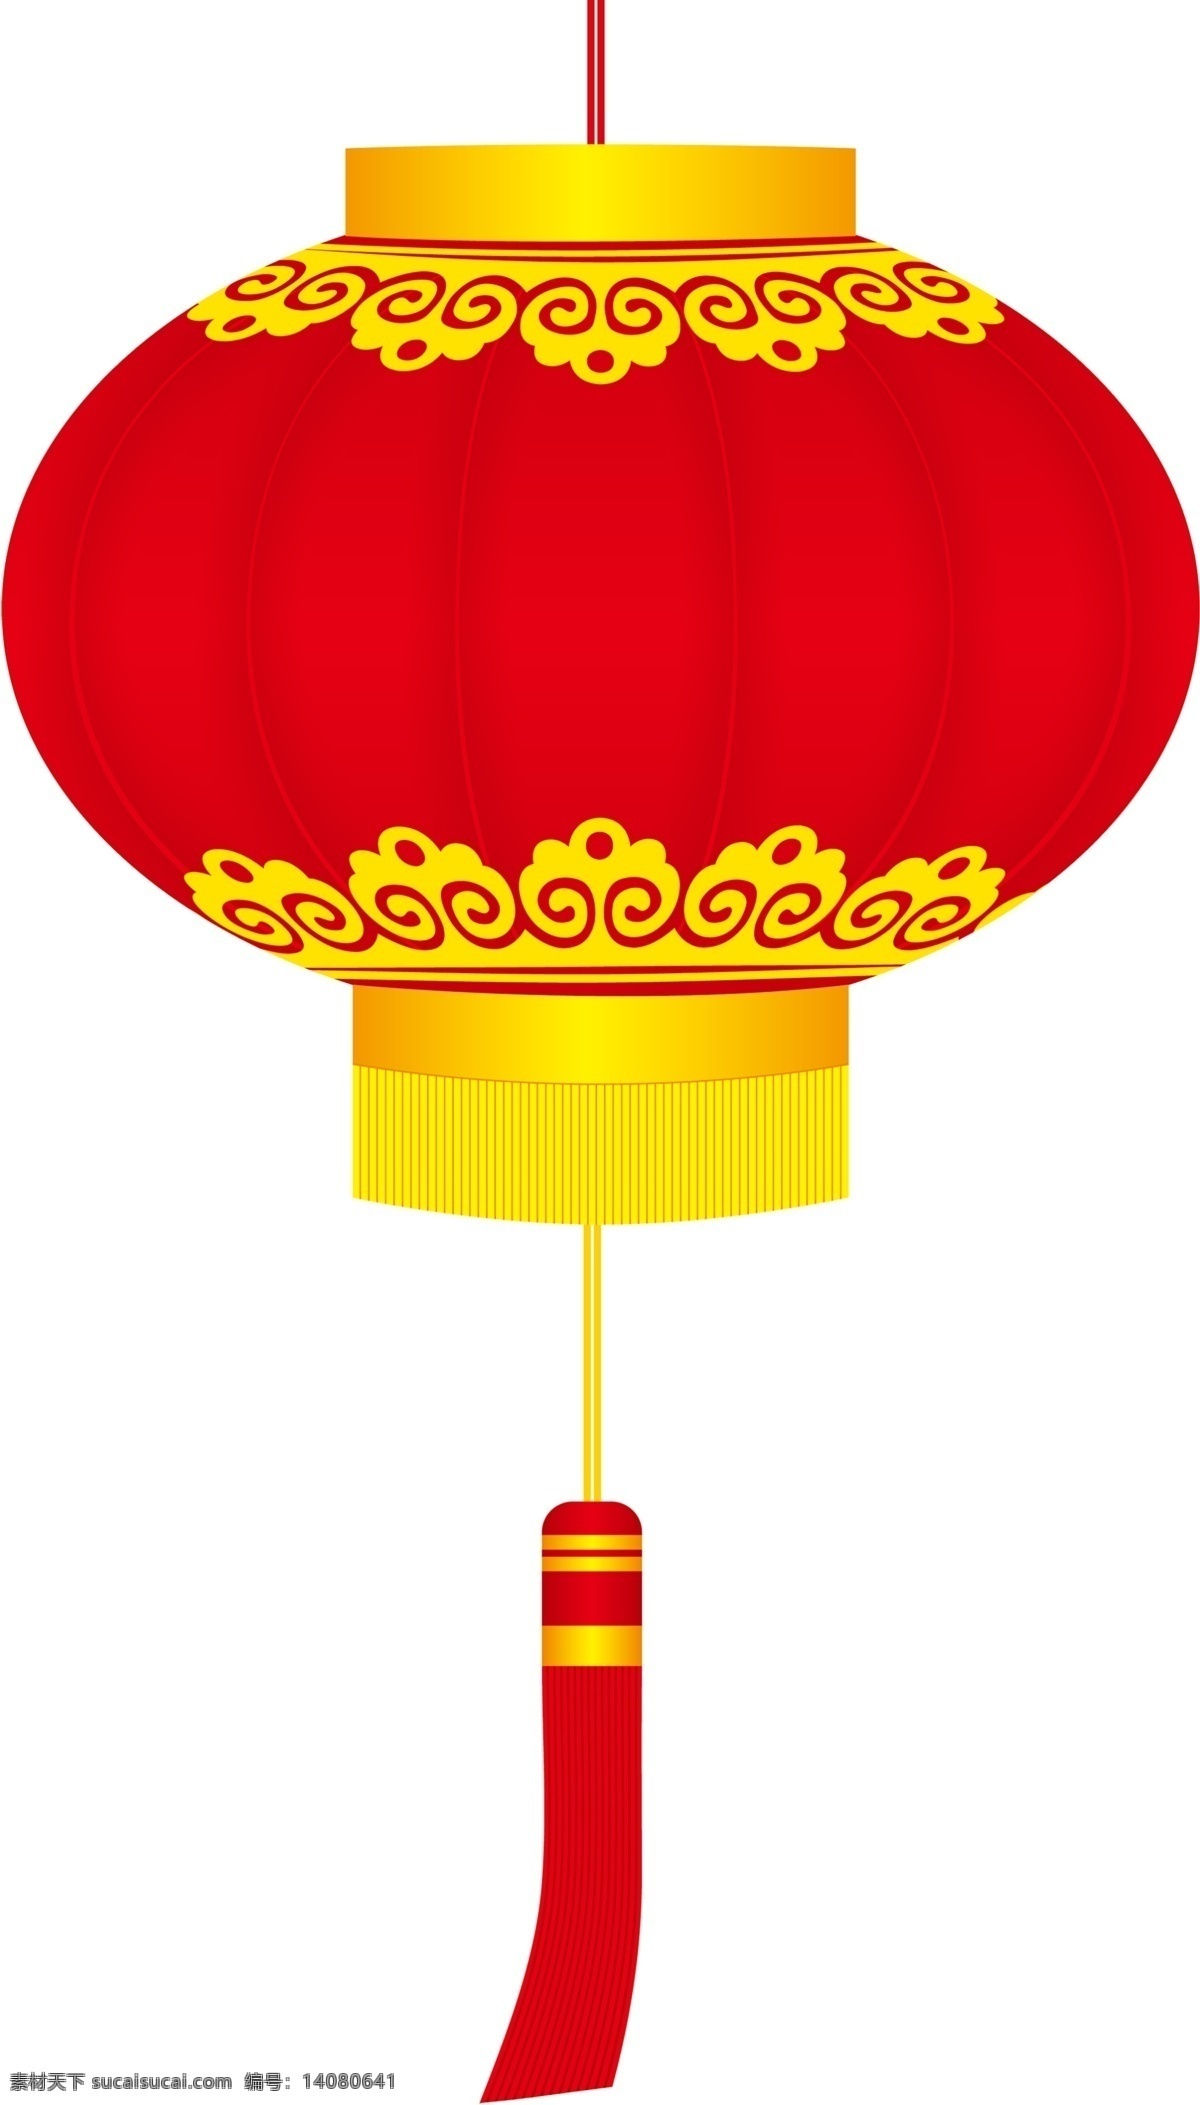 灯笼 灯笼素材下载 灯笼模板下载 节日 喜庆 春节 红灯笼 红火 节日素材 文化艺术 节日庆祝